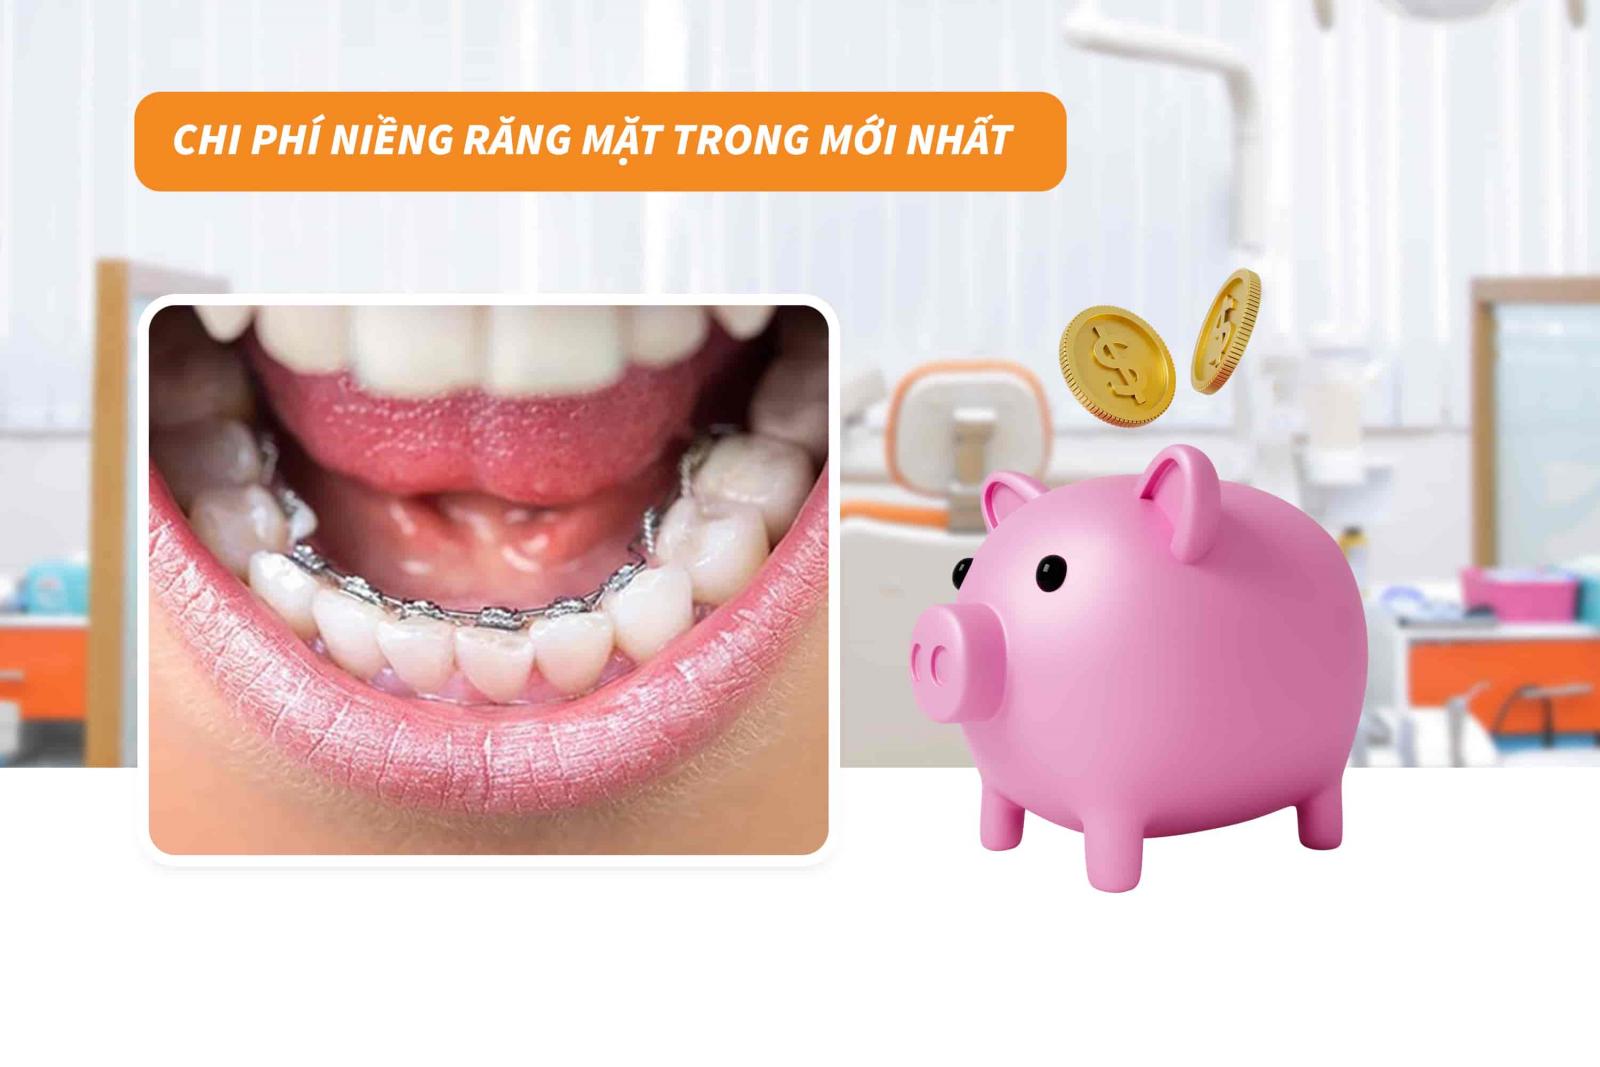 Giá niềng răng mặt trong mới nhất tại Up Dental